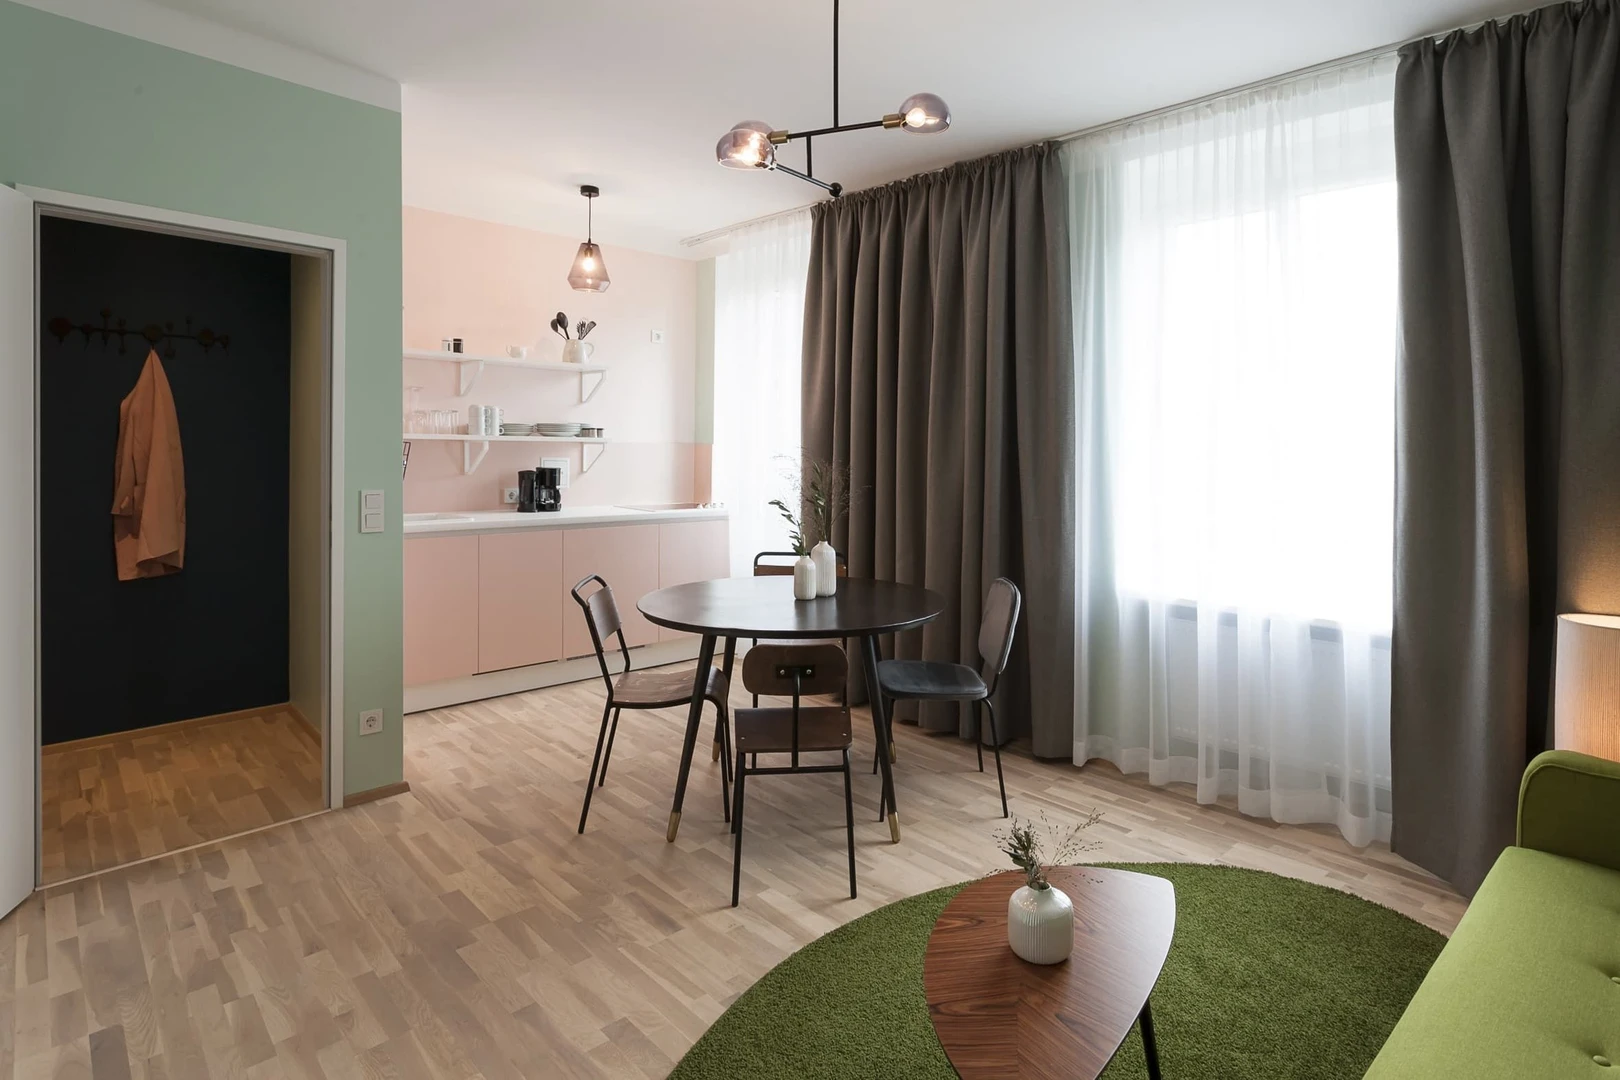 Habitación privada barata en Linz